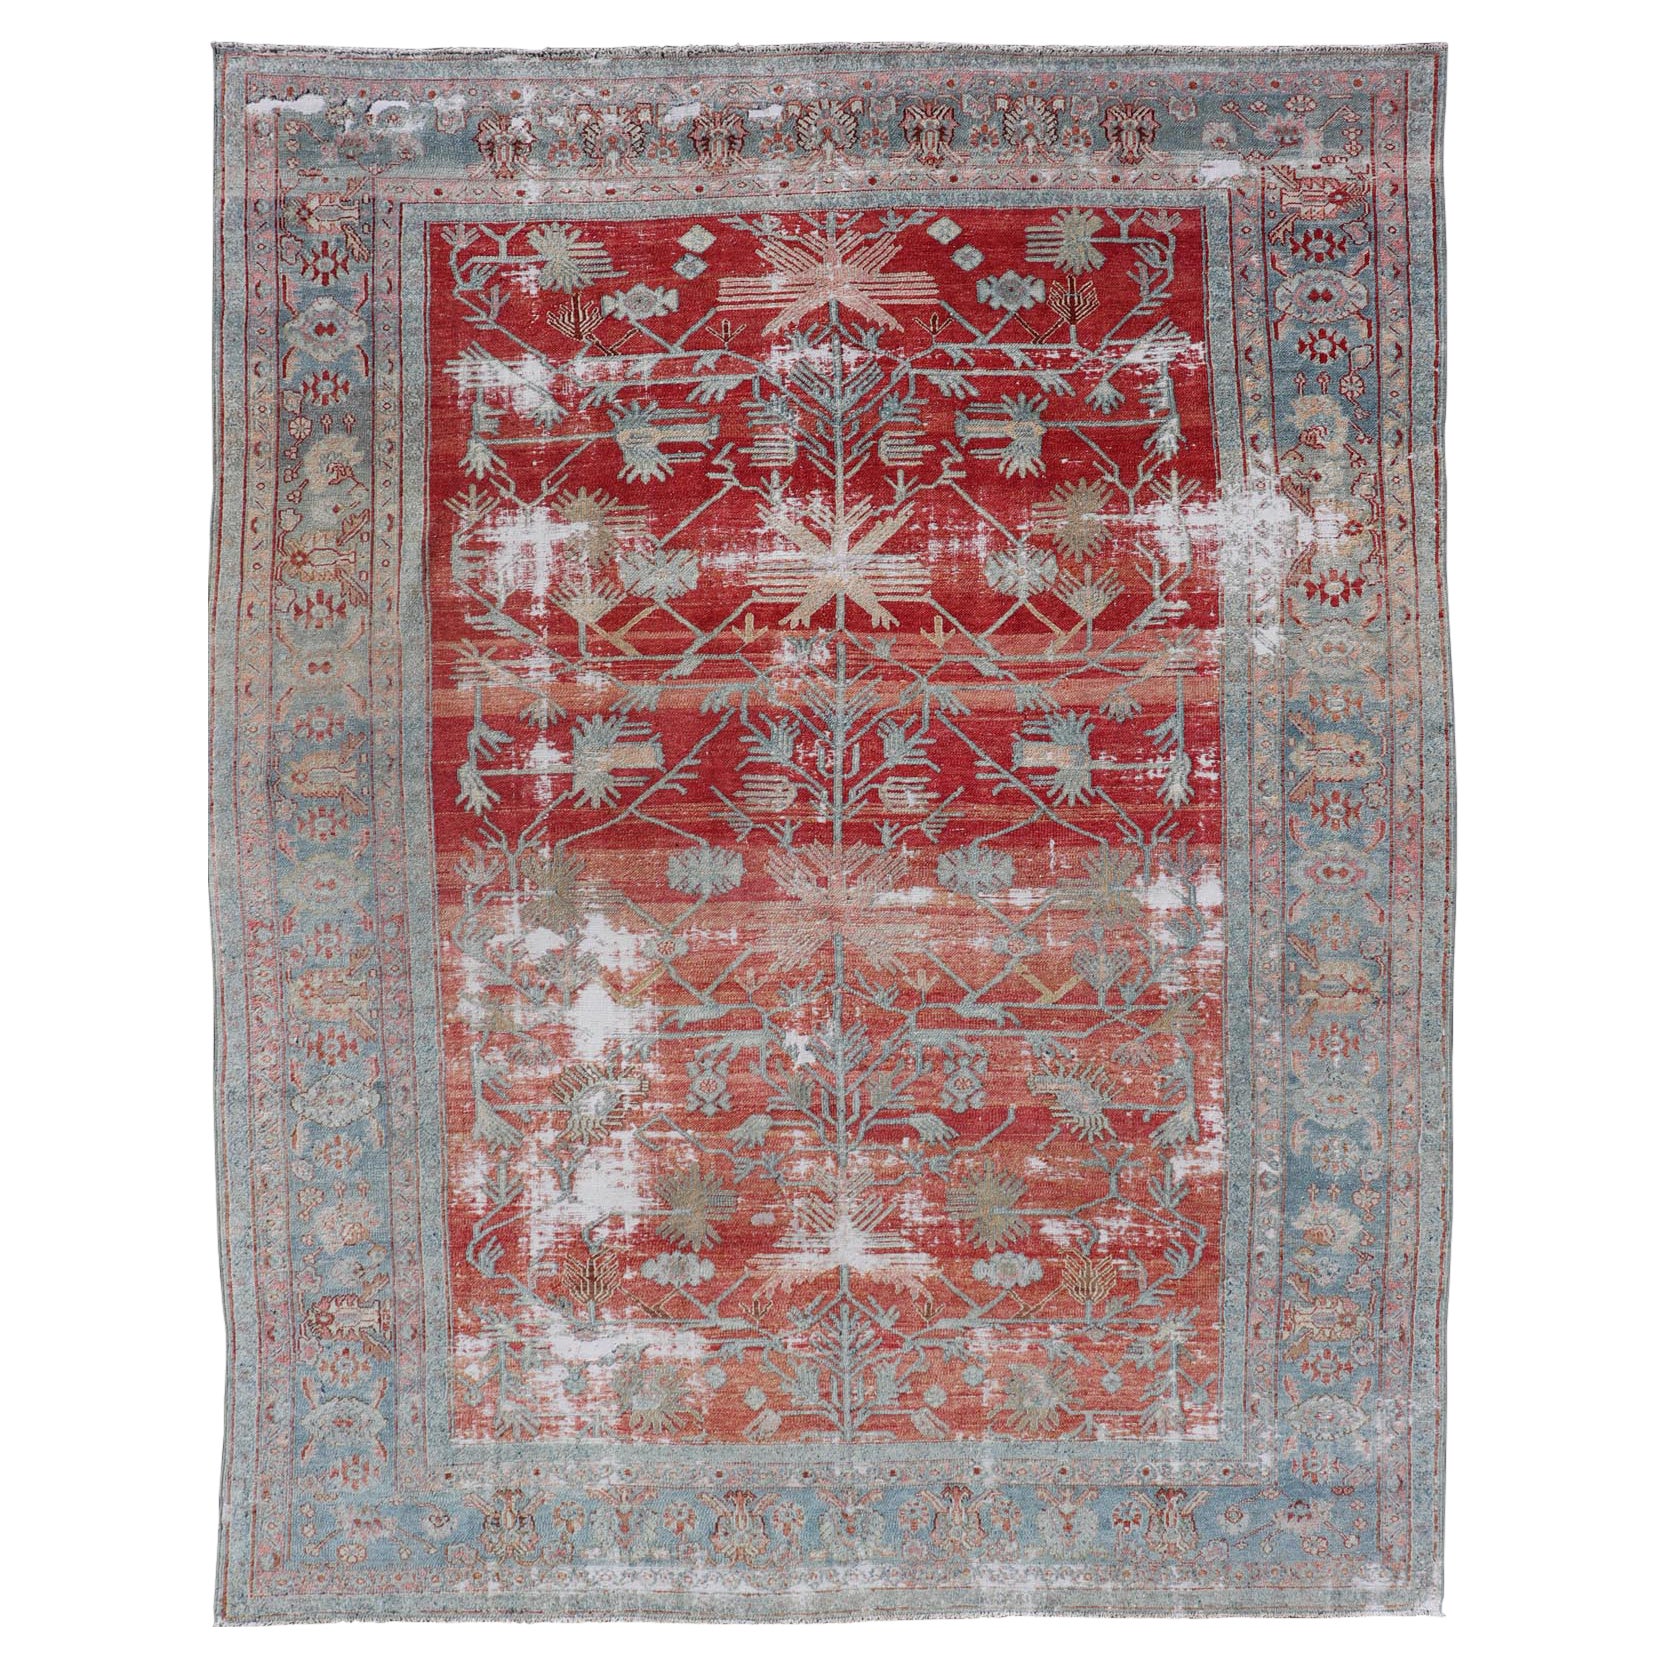 Antiker handgeknüpfter persischer Bibikabad-Teppich aus Wolle mit einzigartigen Medaillons